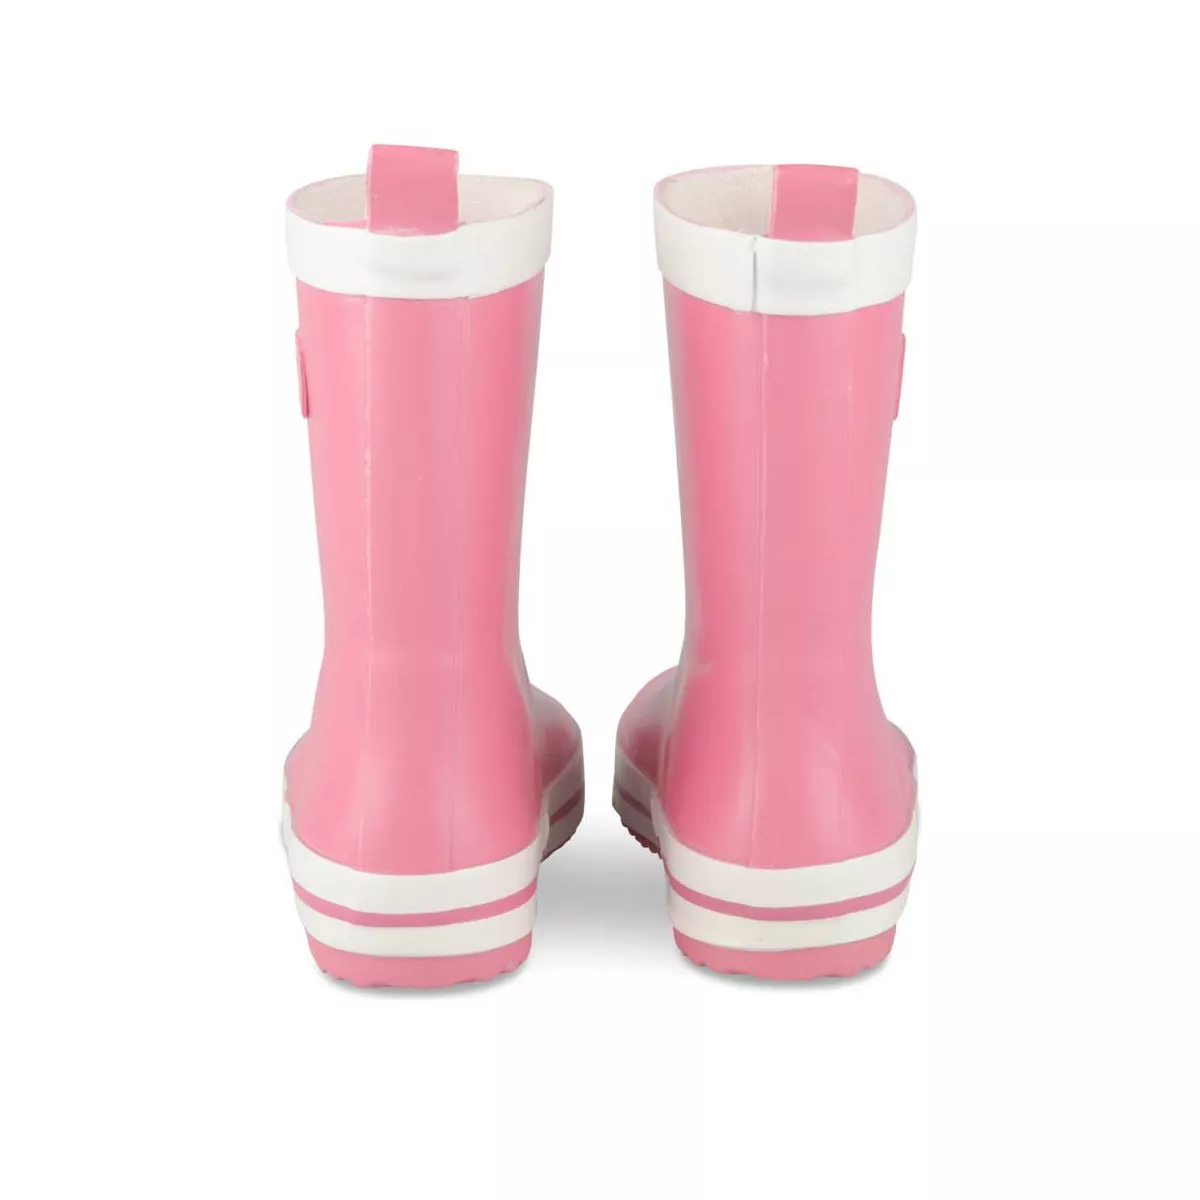 Bottes de pluie fille en caoutchouc - rose pale, Chaussures